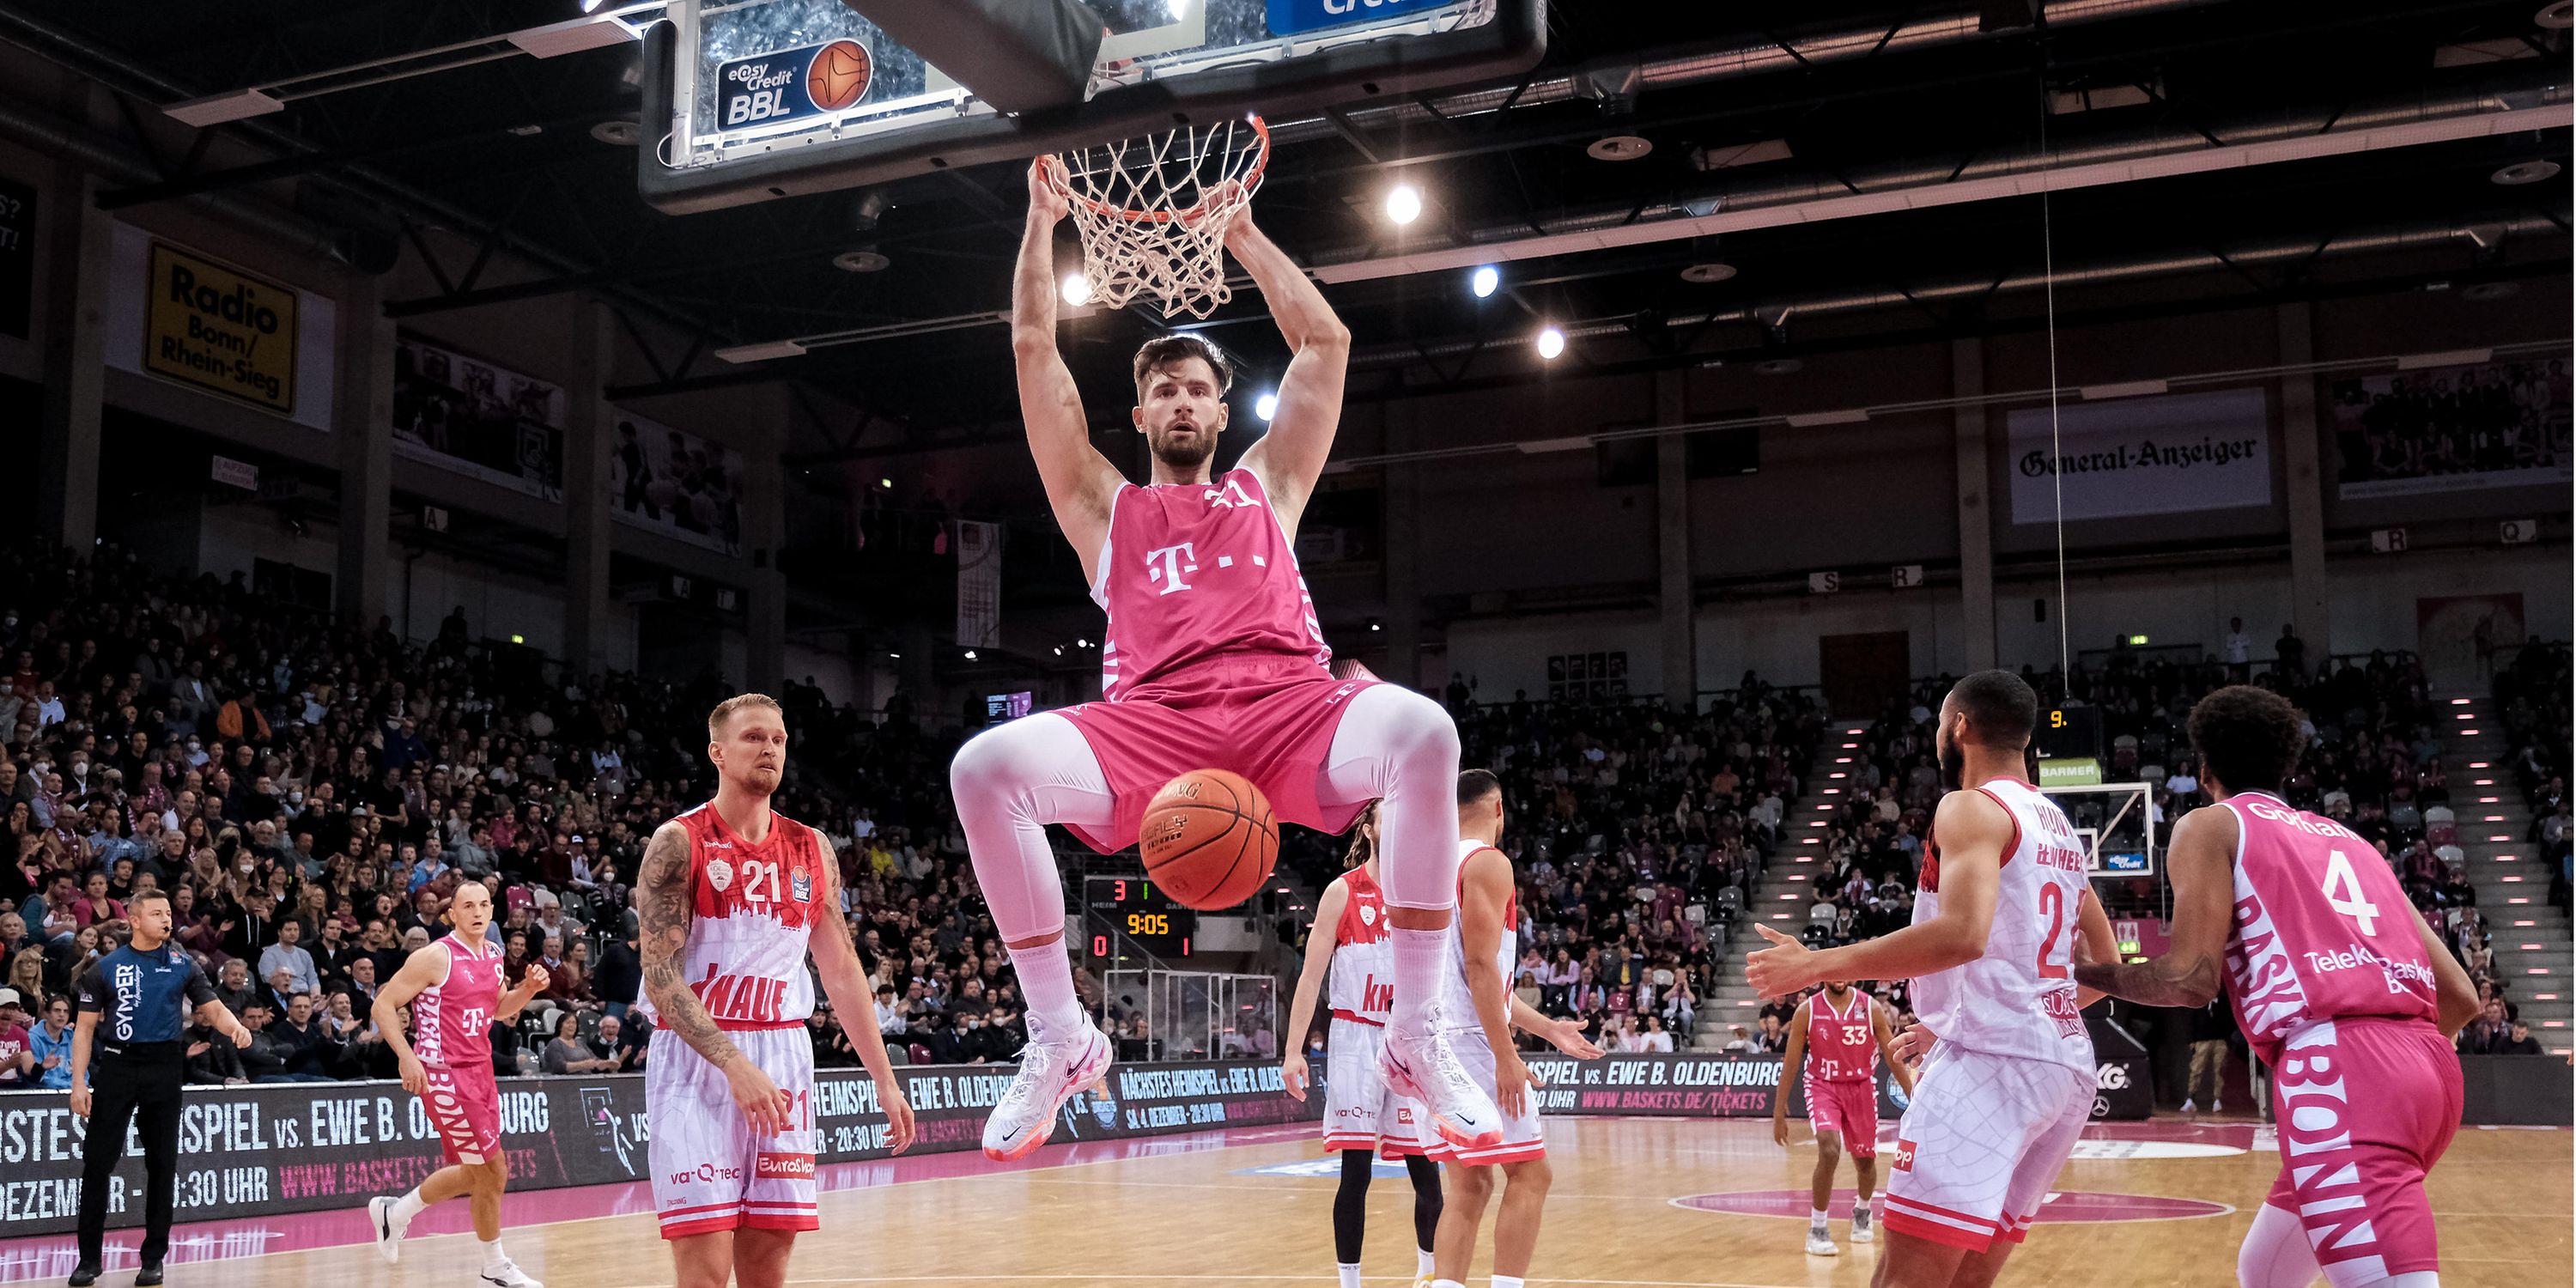 Telekom verlängert Partnerschaft mit Baskets Bonn bis 2025 Deutsche Telekom